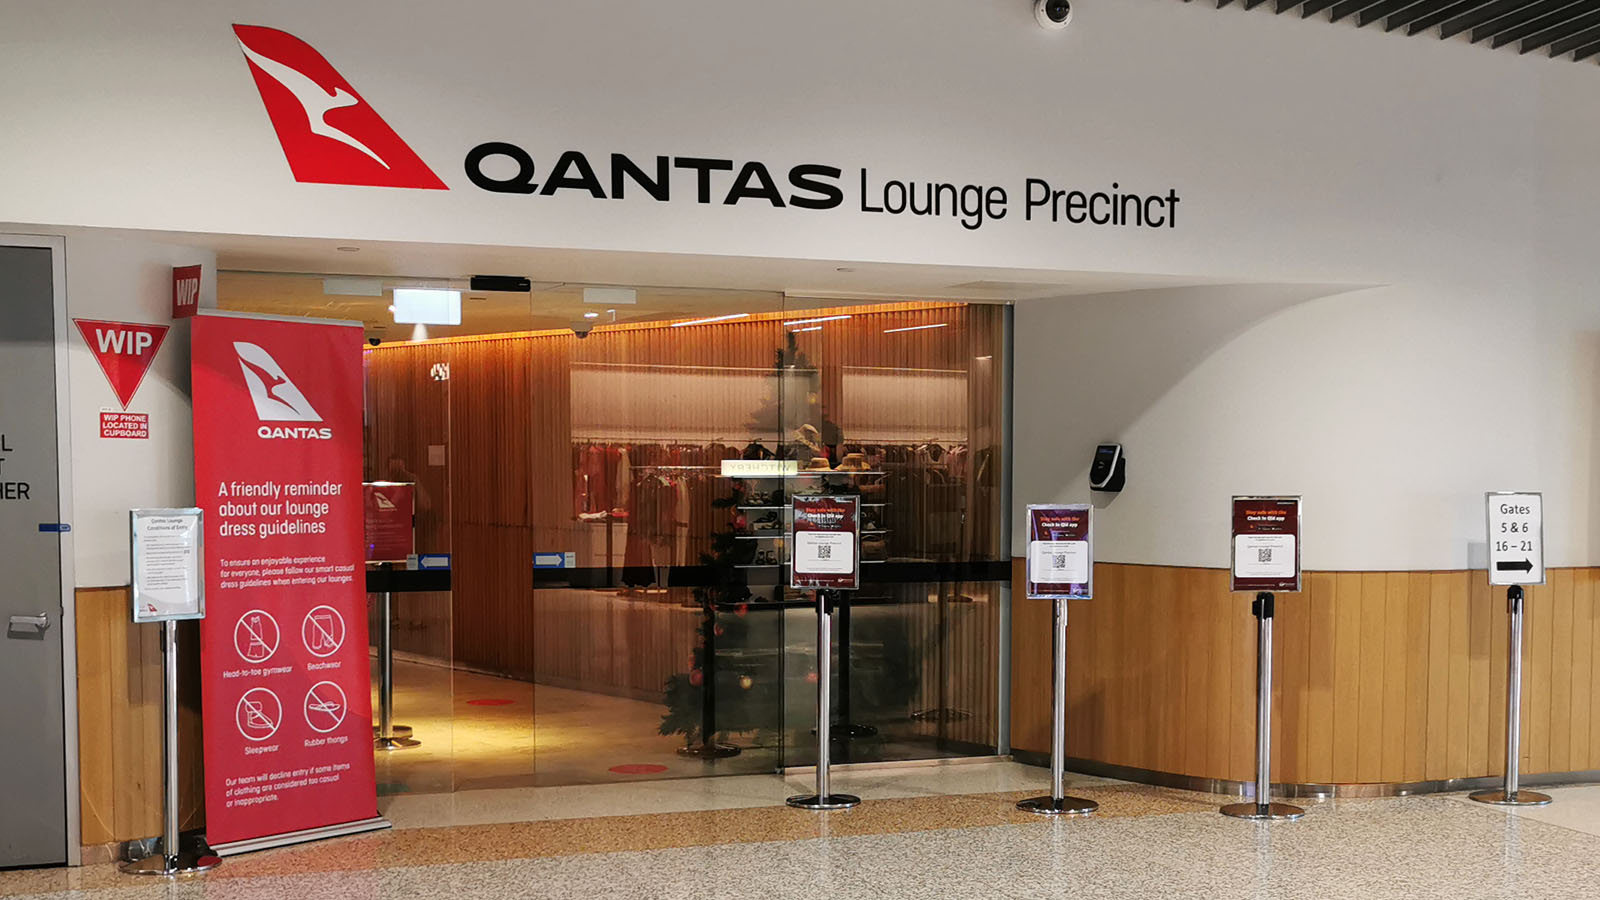 Qantas Club Brisbane